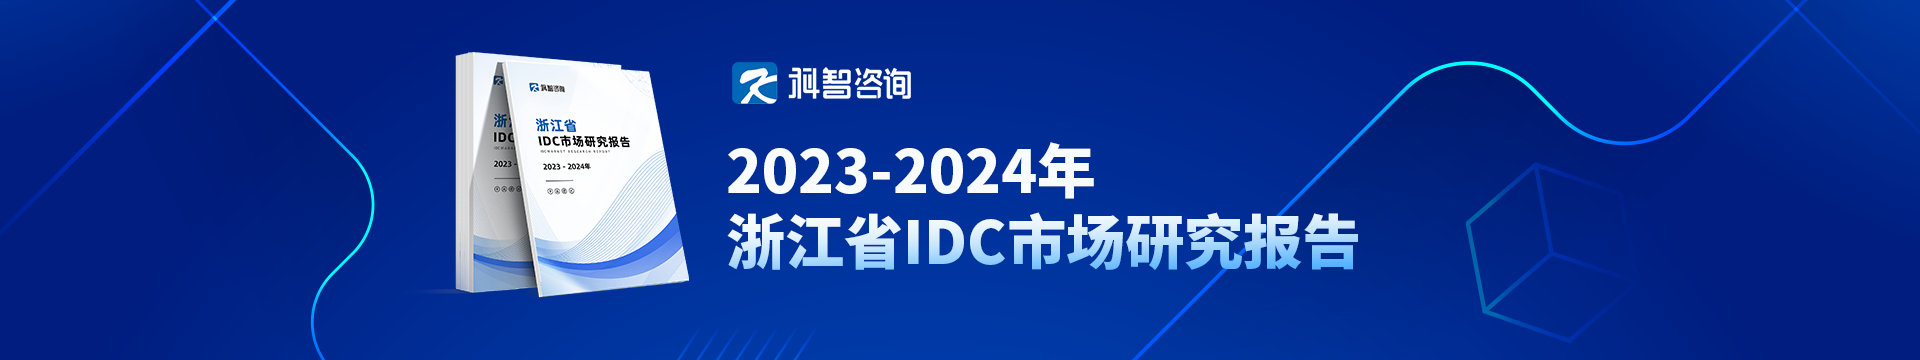 2023-2024年浙江省IDC市场研究报告